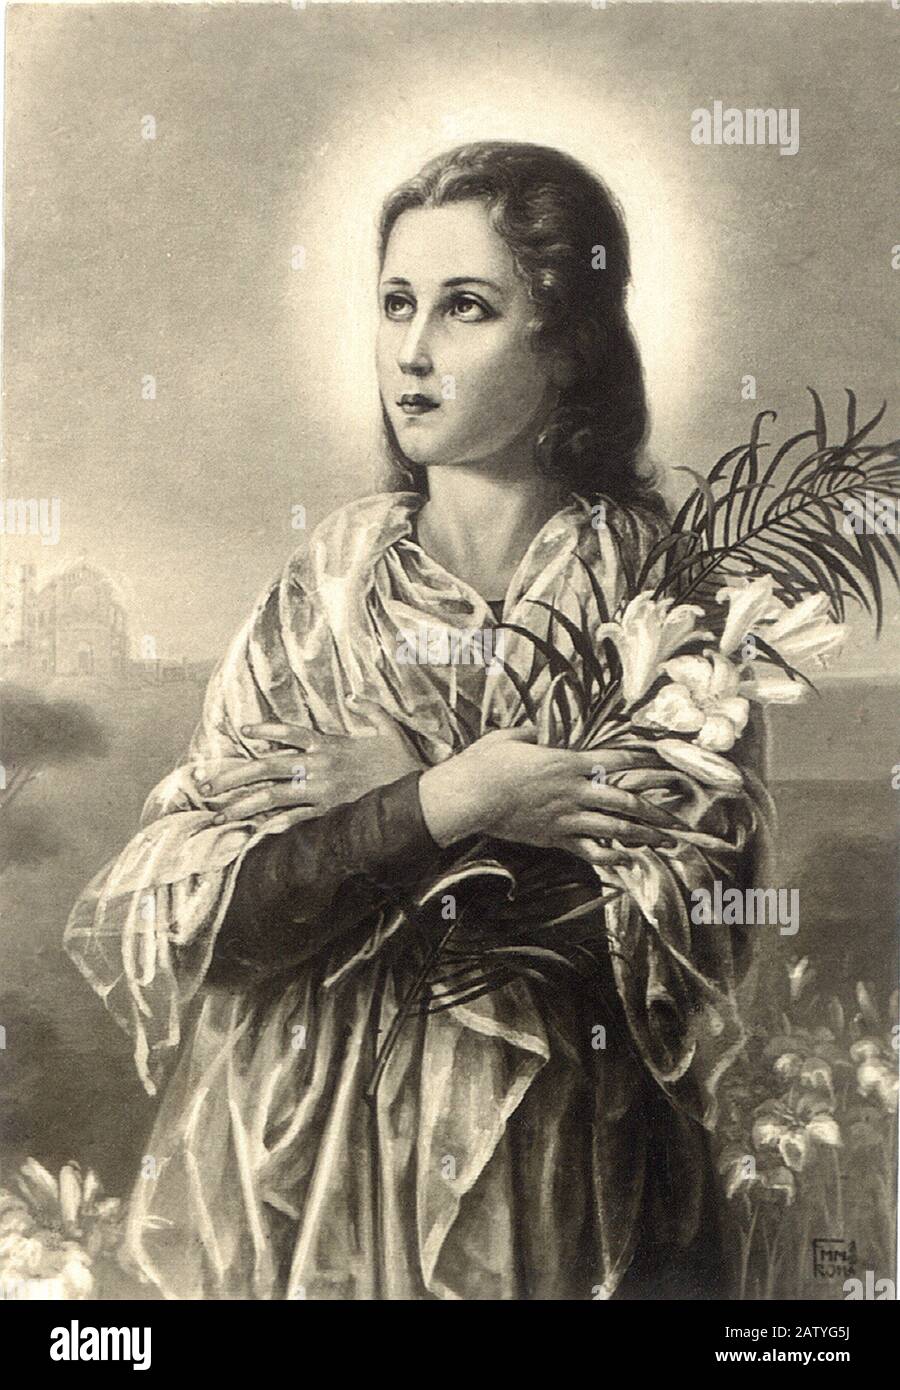 Saint  MARIA  GORETTI  ( Corinaldo  ,  Ancona  1890  -  Nettuno  Roma 1902  ) canonized in  1950  (  in this image a popular holy picture  Italy  arou Stock Photo